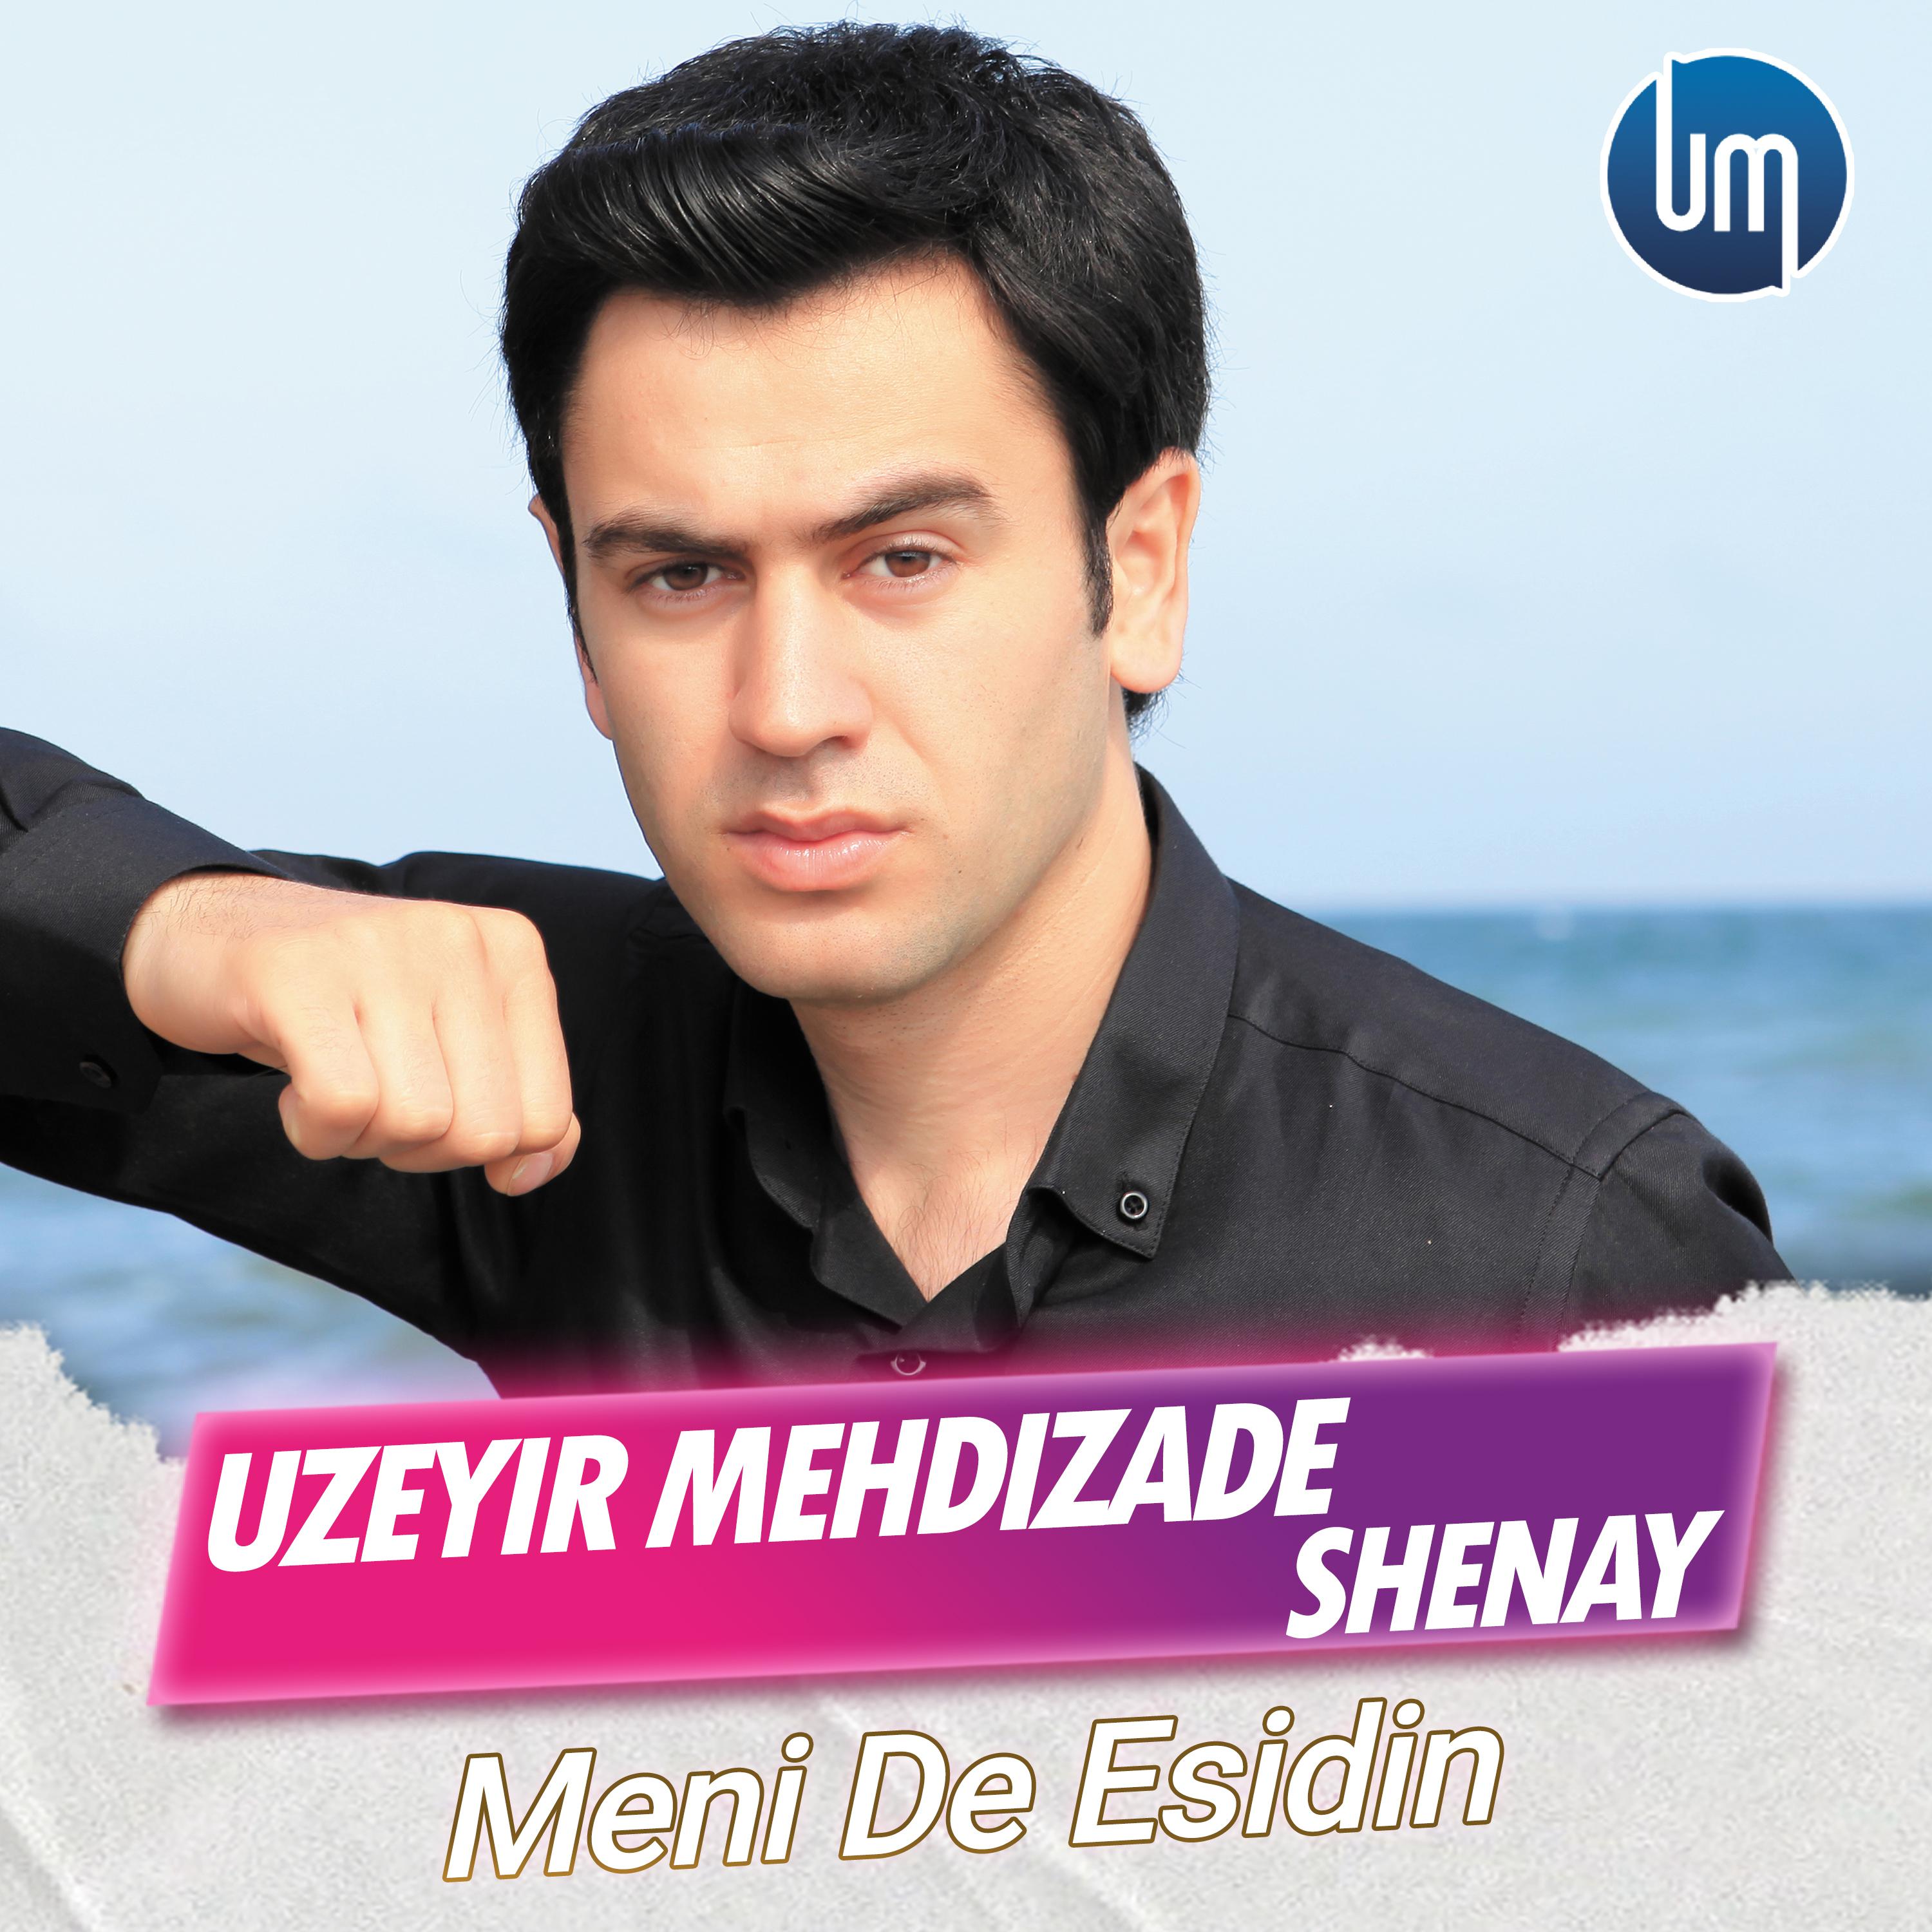 播 放 收 藏(5)下 载. Uzeyir Mehdizade. 发 行 公 司.Uzeyir Production. 歌 手. 发 行 时 间.20...